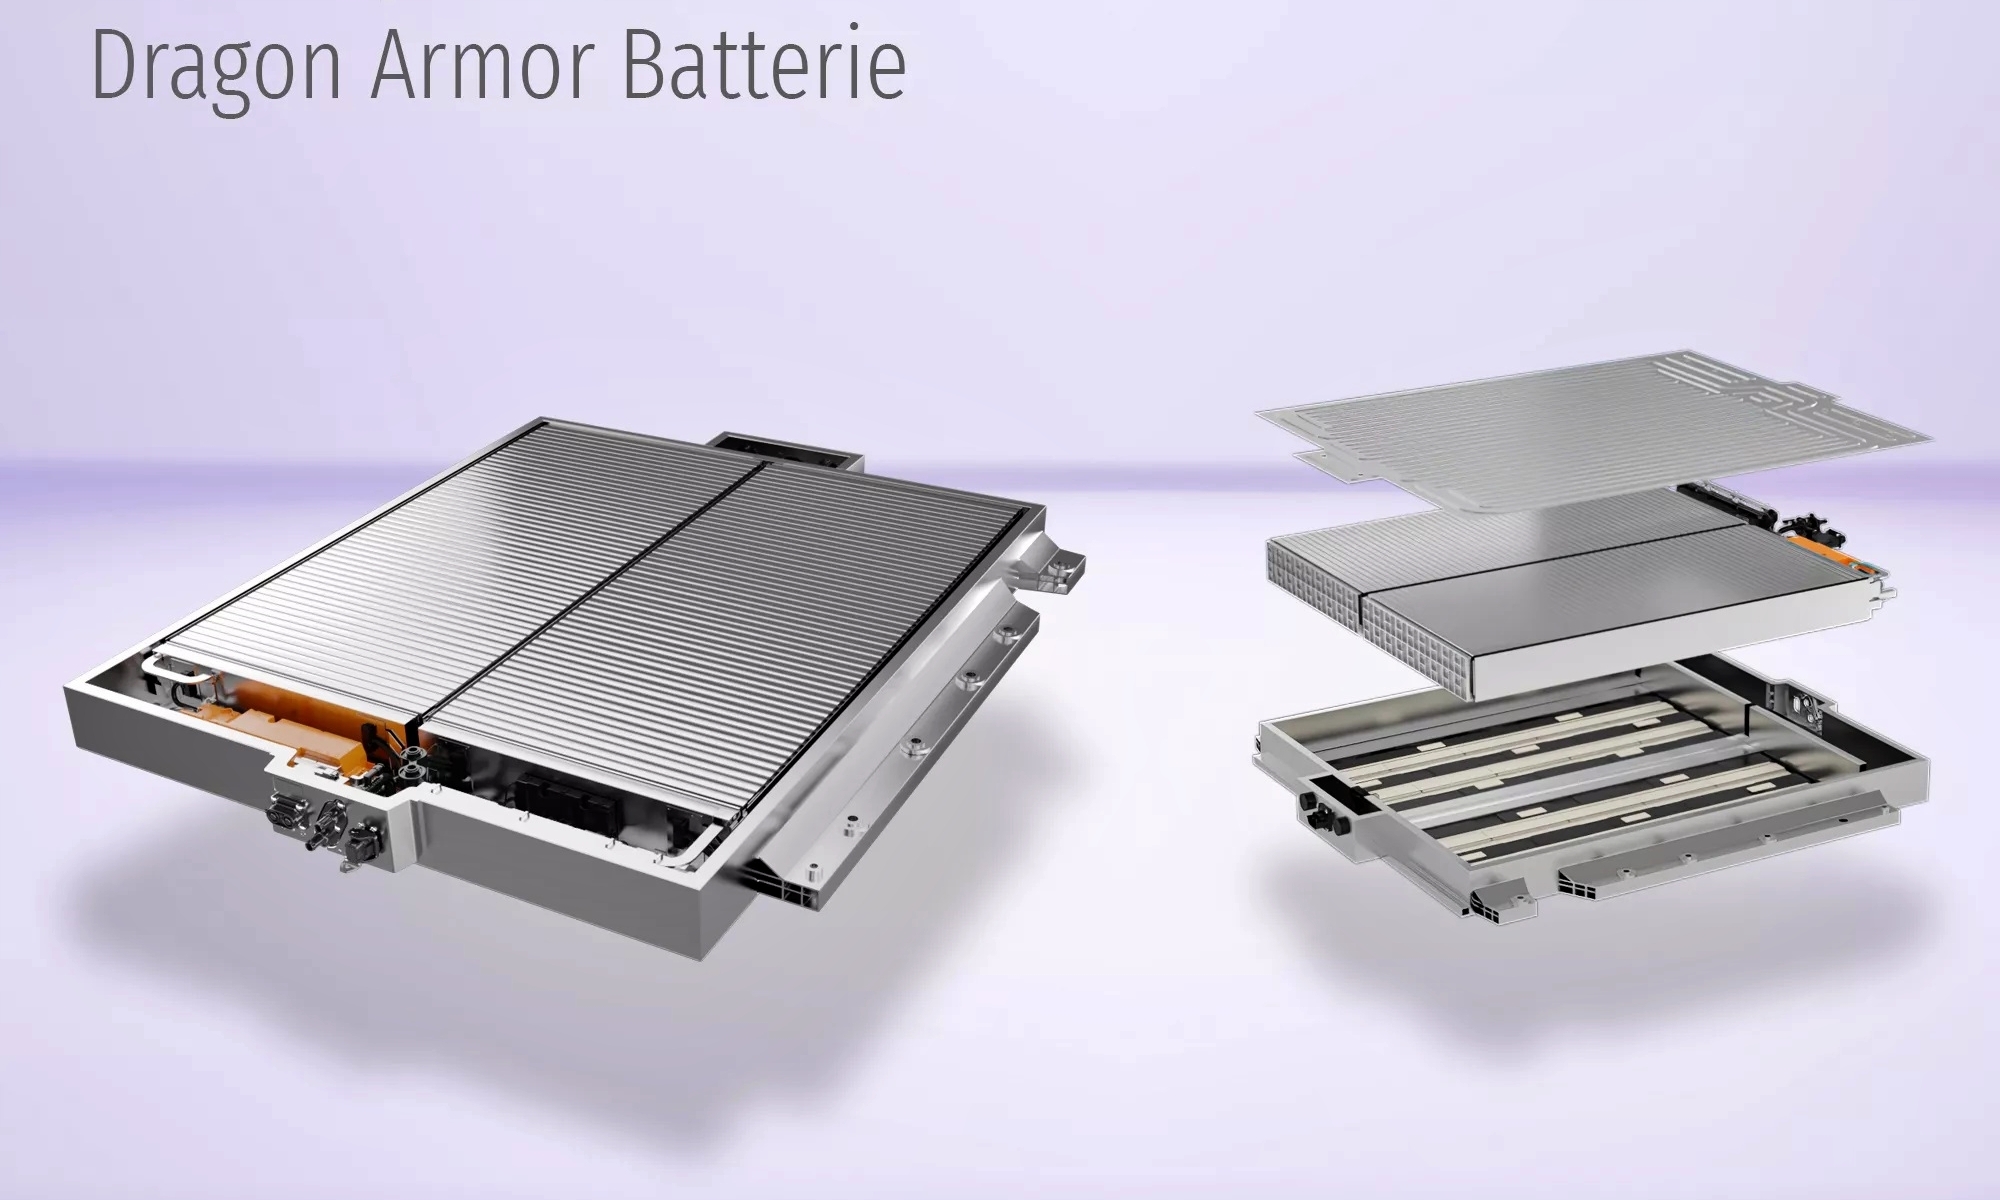 La Short Blade se ha presentado junto a otras baterías innovadoras como la Dragon Armor.